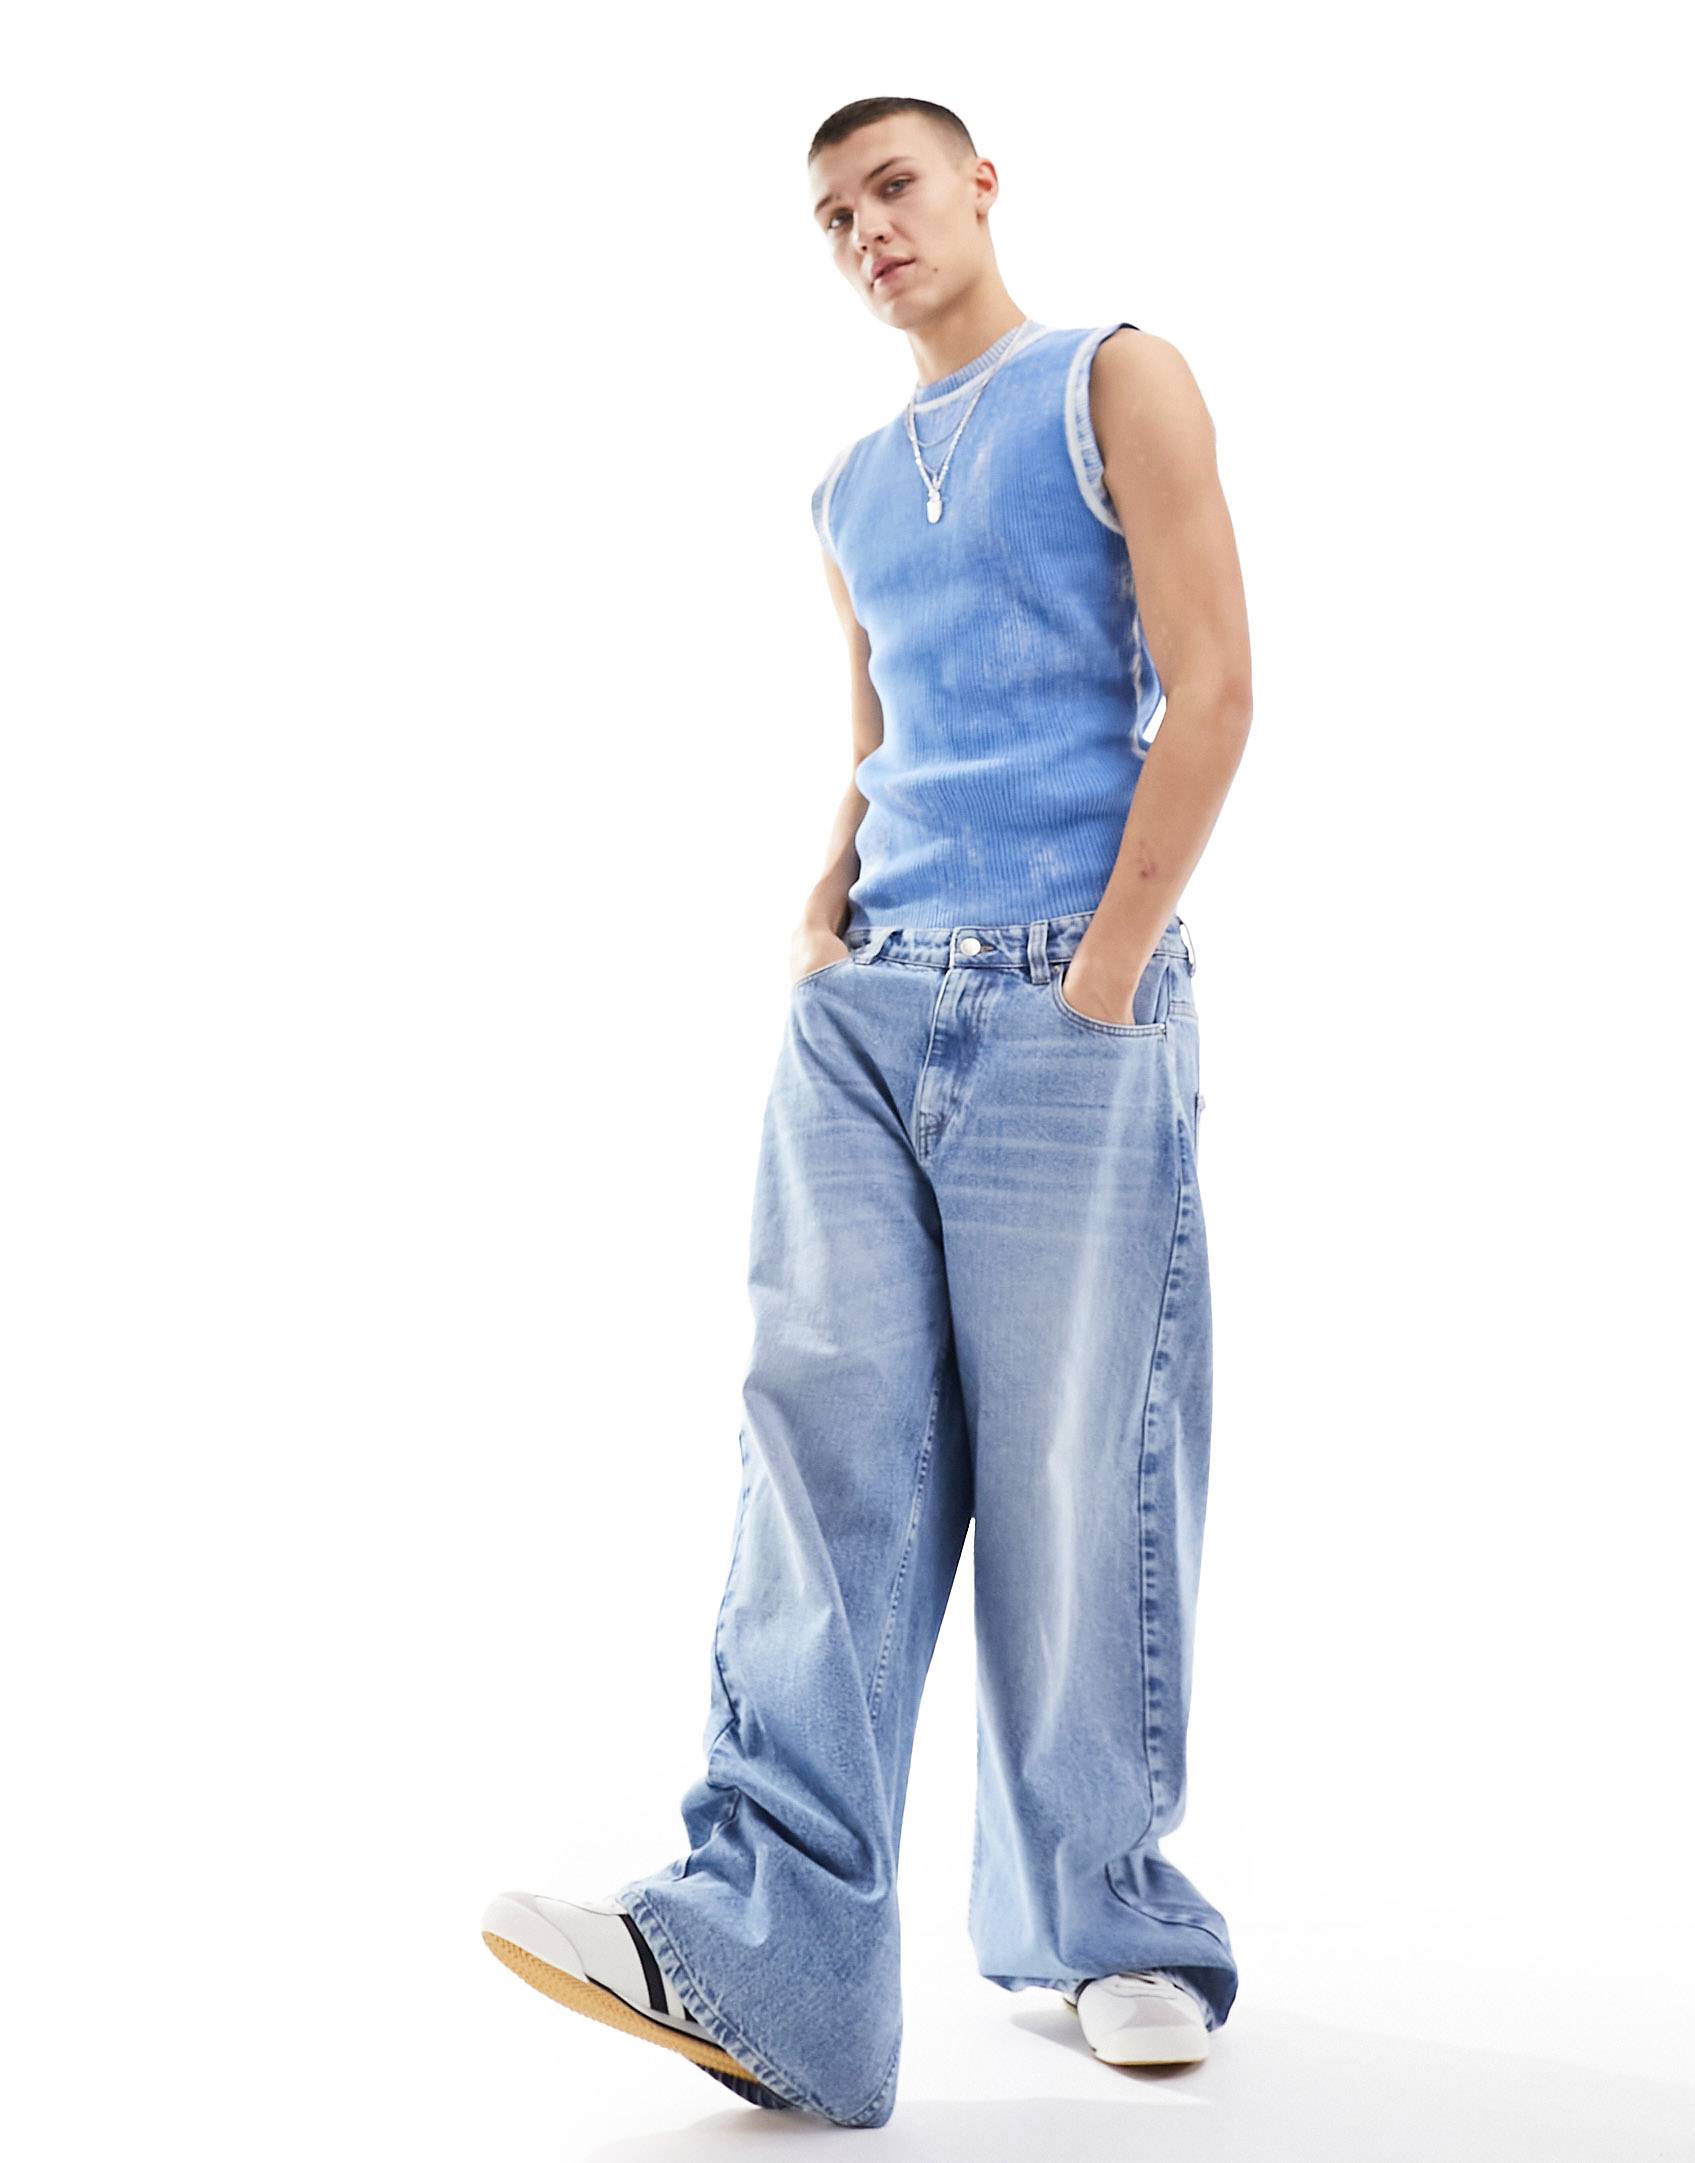 Джинсы Collusion X015 Low Rise Baggy, светло-синий джинсы для женщин джинсы для мам джинсы с низкой талией женские высокоэластичные стрейчевые джинсы женские джинсы с эффектом потертости